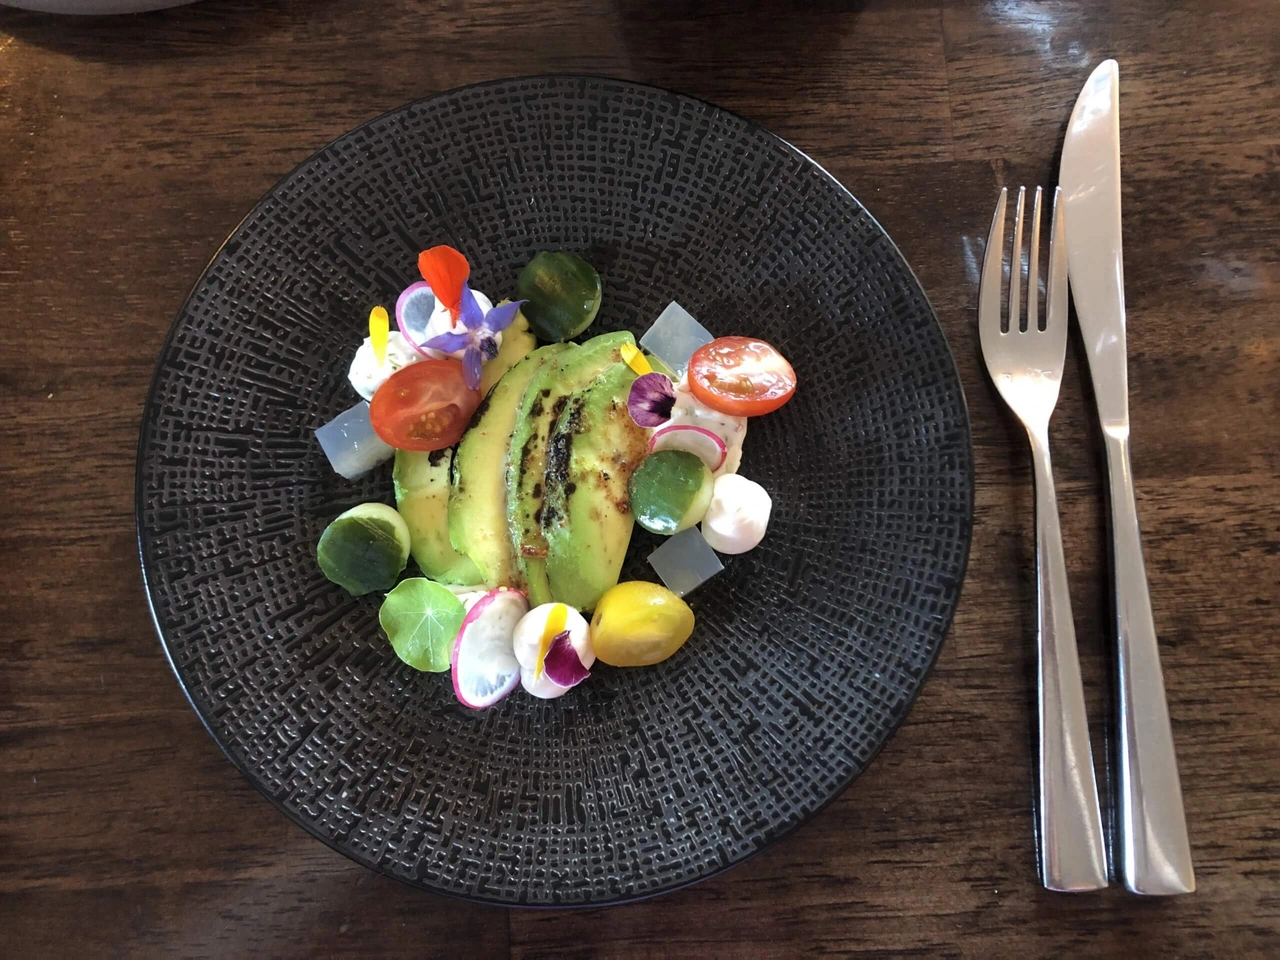 Hotel Brasserie Rebecca: Texels genieten op culinair niveau